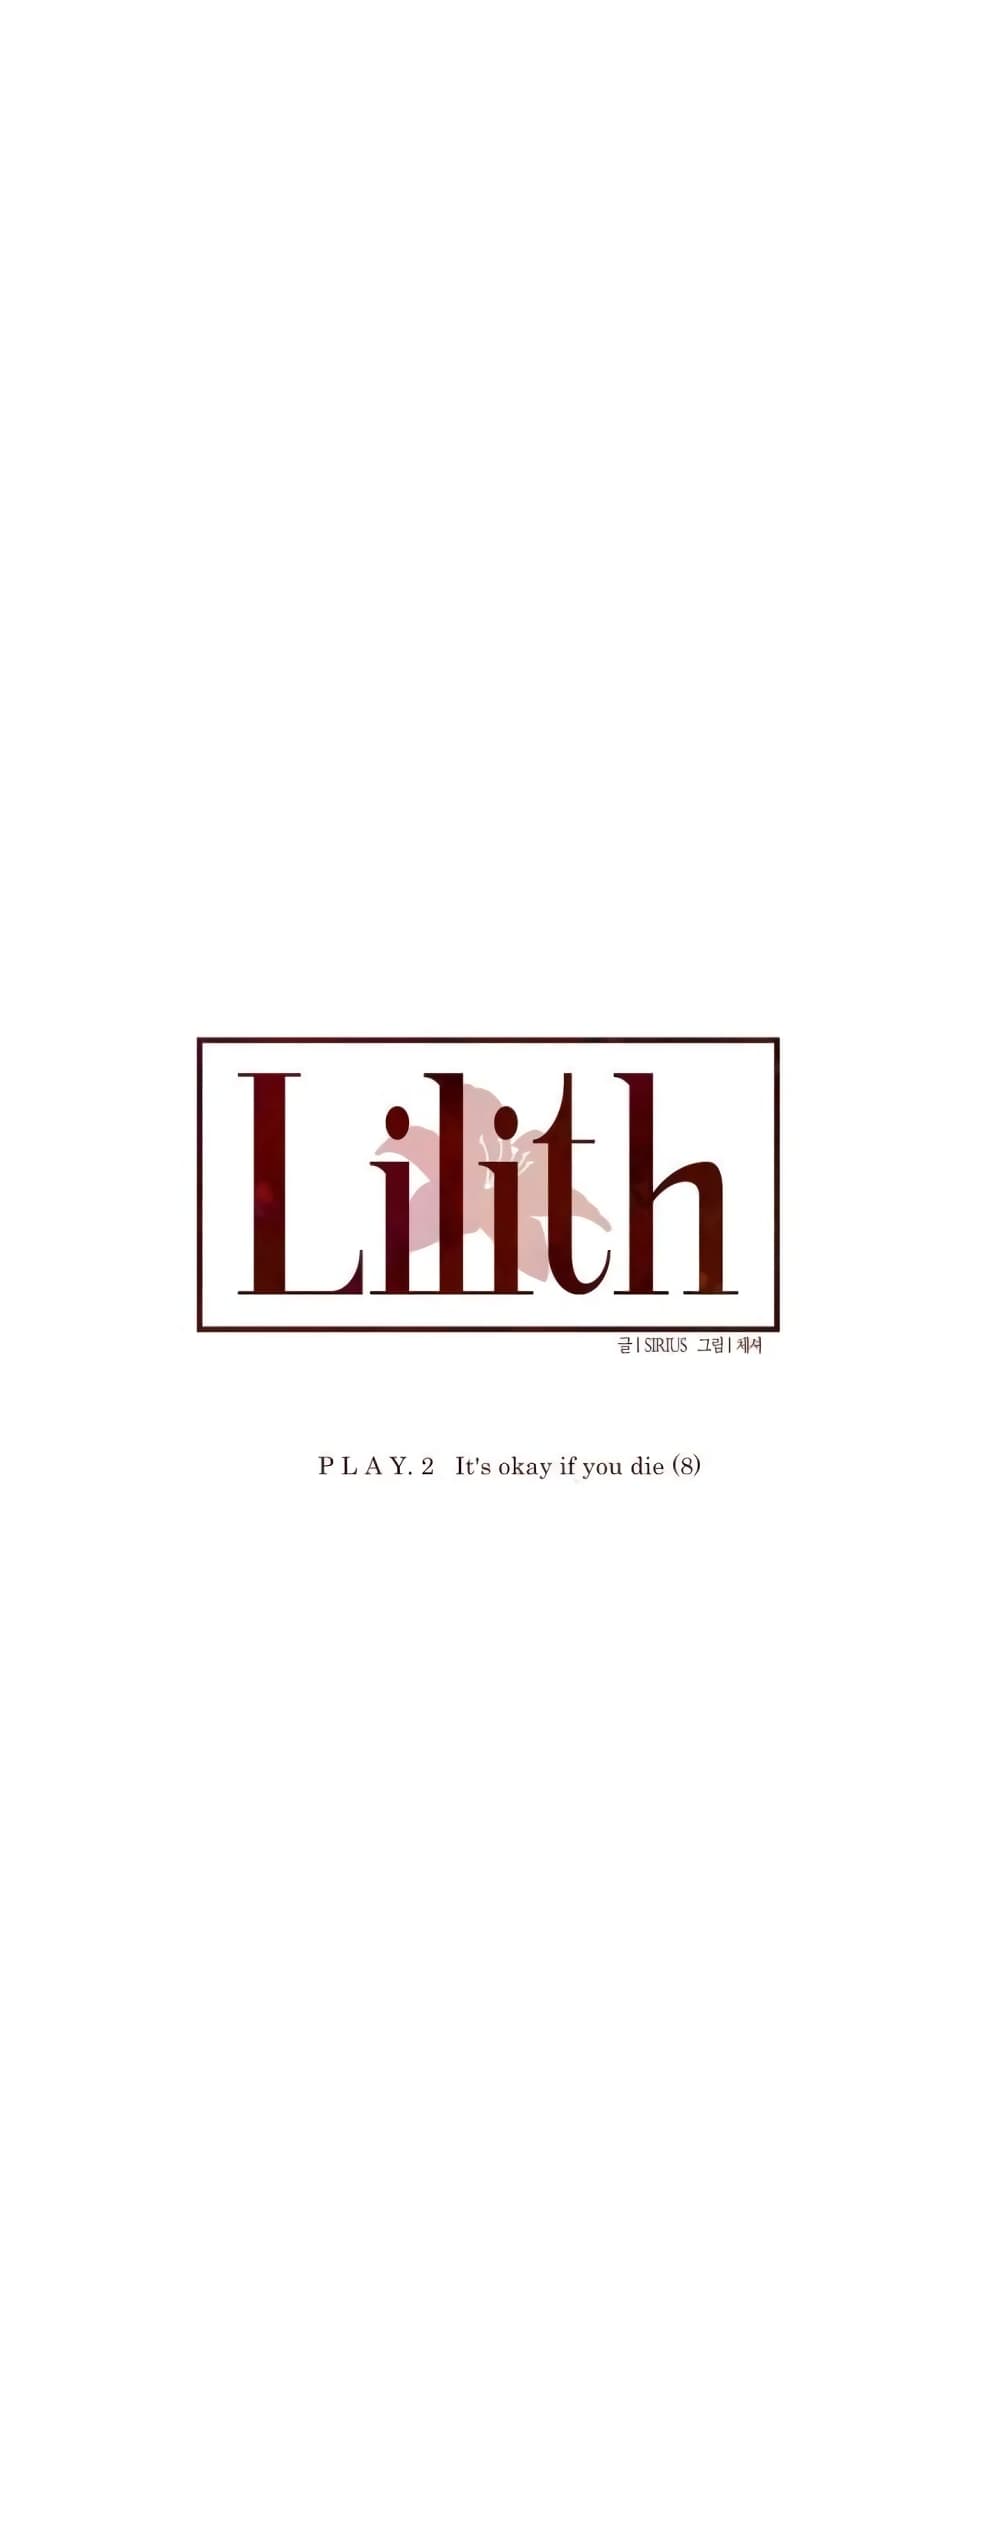 Lilith 16 06